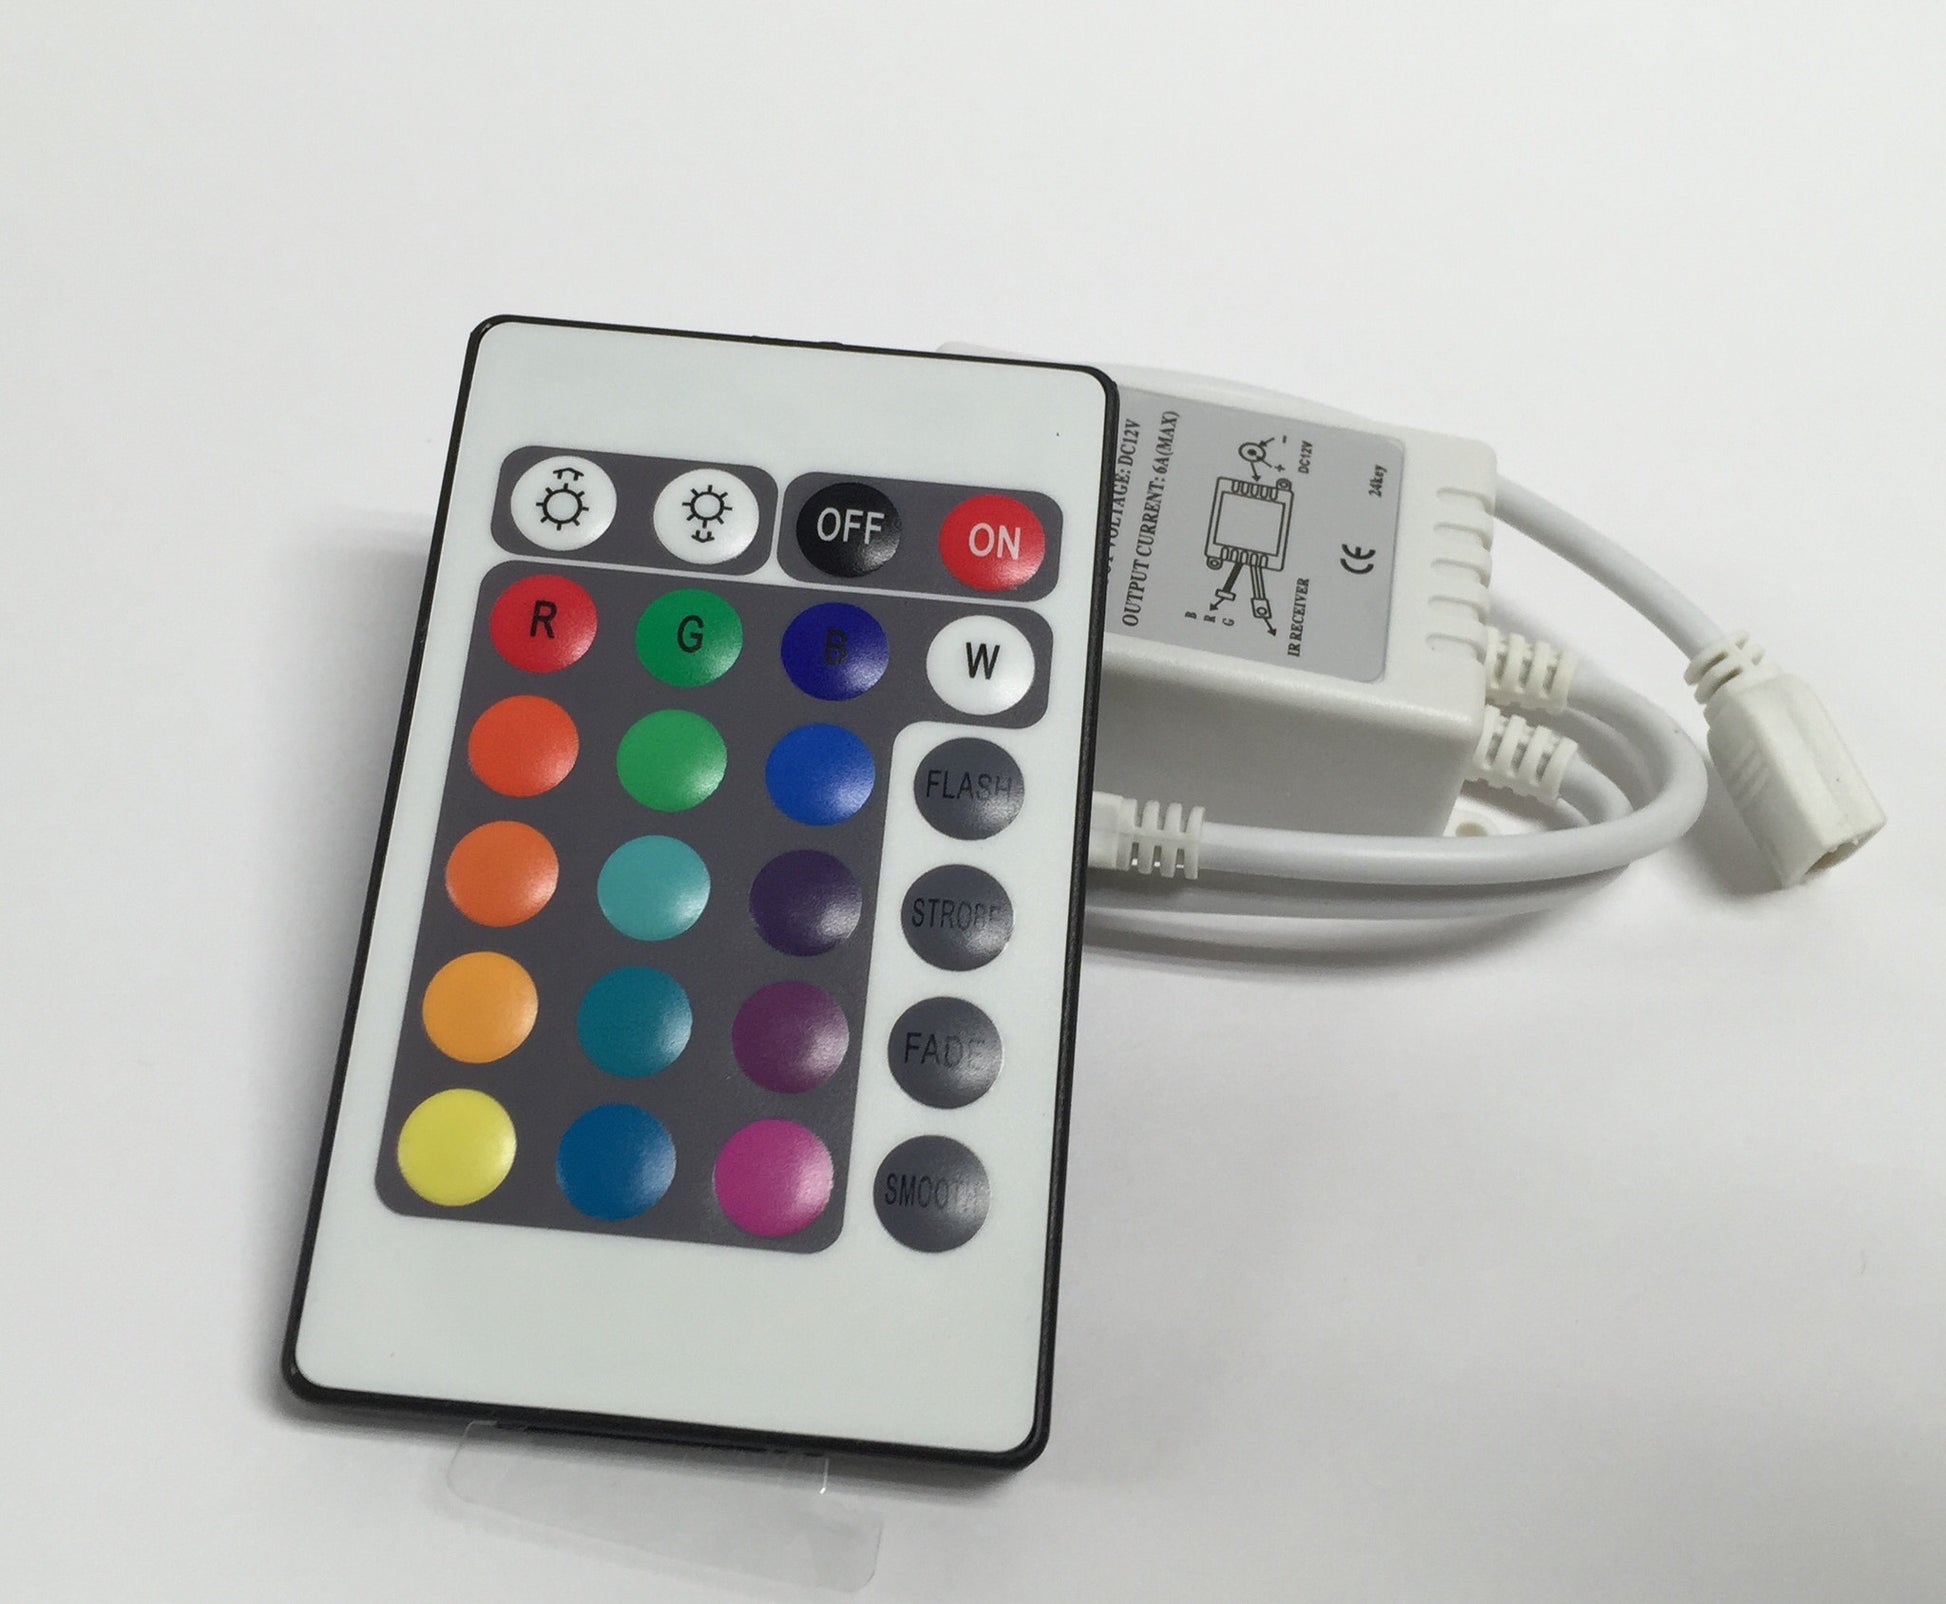 12V RGB LED Strip Light Controller, 24-Key – BrightNexLED